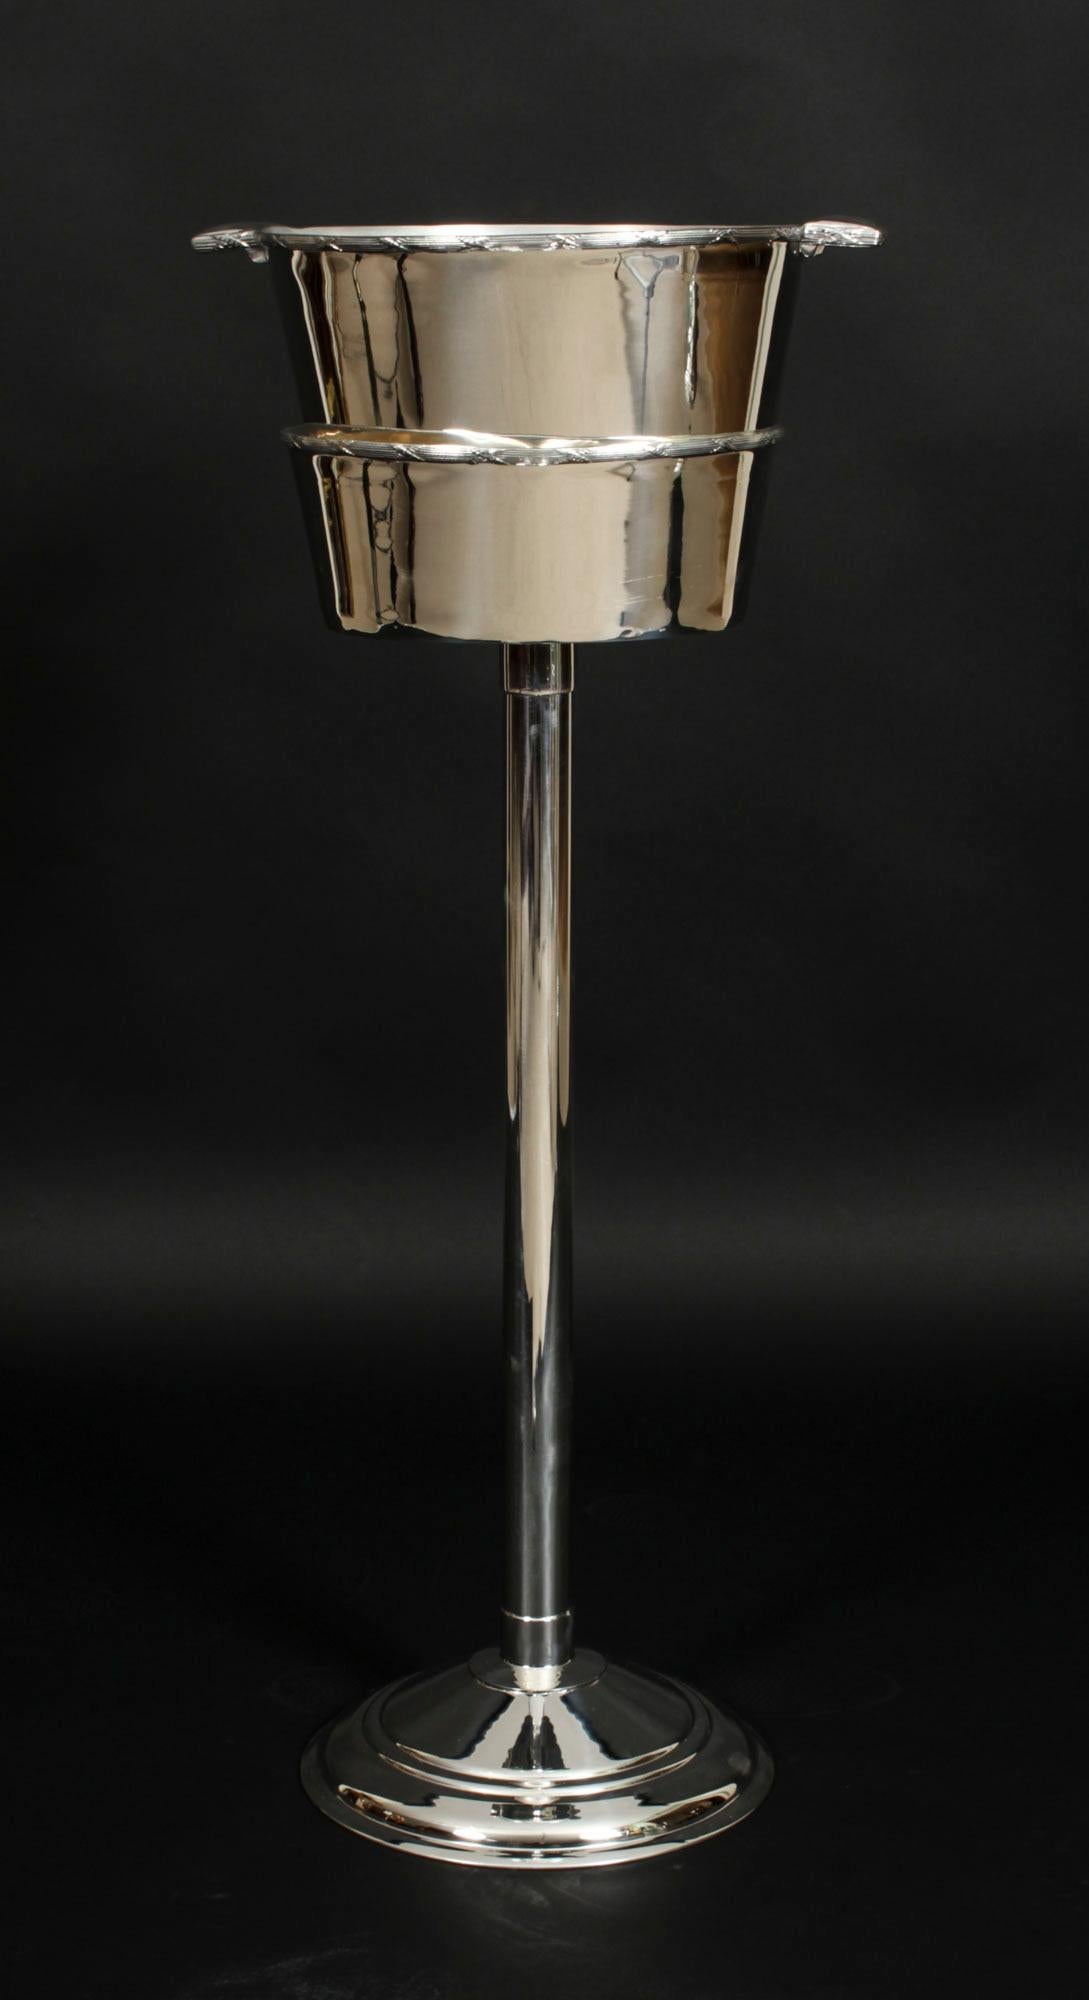 Il s'agit d'un fabuleux rafraîchisseur à champagne en métal argenté sur pied portant la marque du célèbre orfèvre,  Mappin & Webb, circa 1900 en date.

Il présente un design magnifique, à la fois élégant et contemporain.

L'aspect simple mais